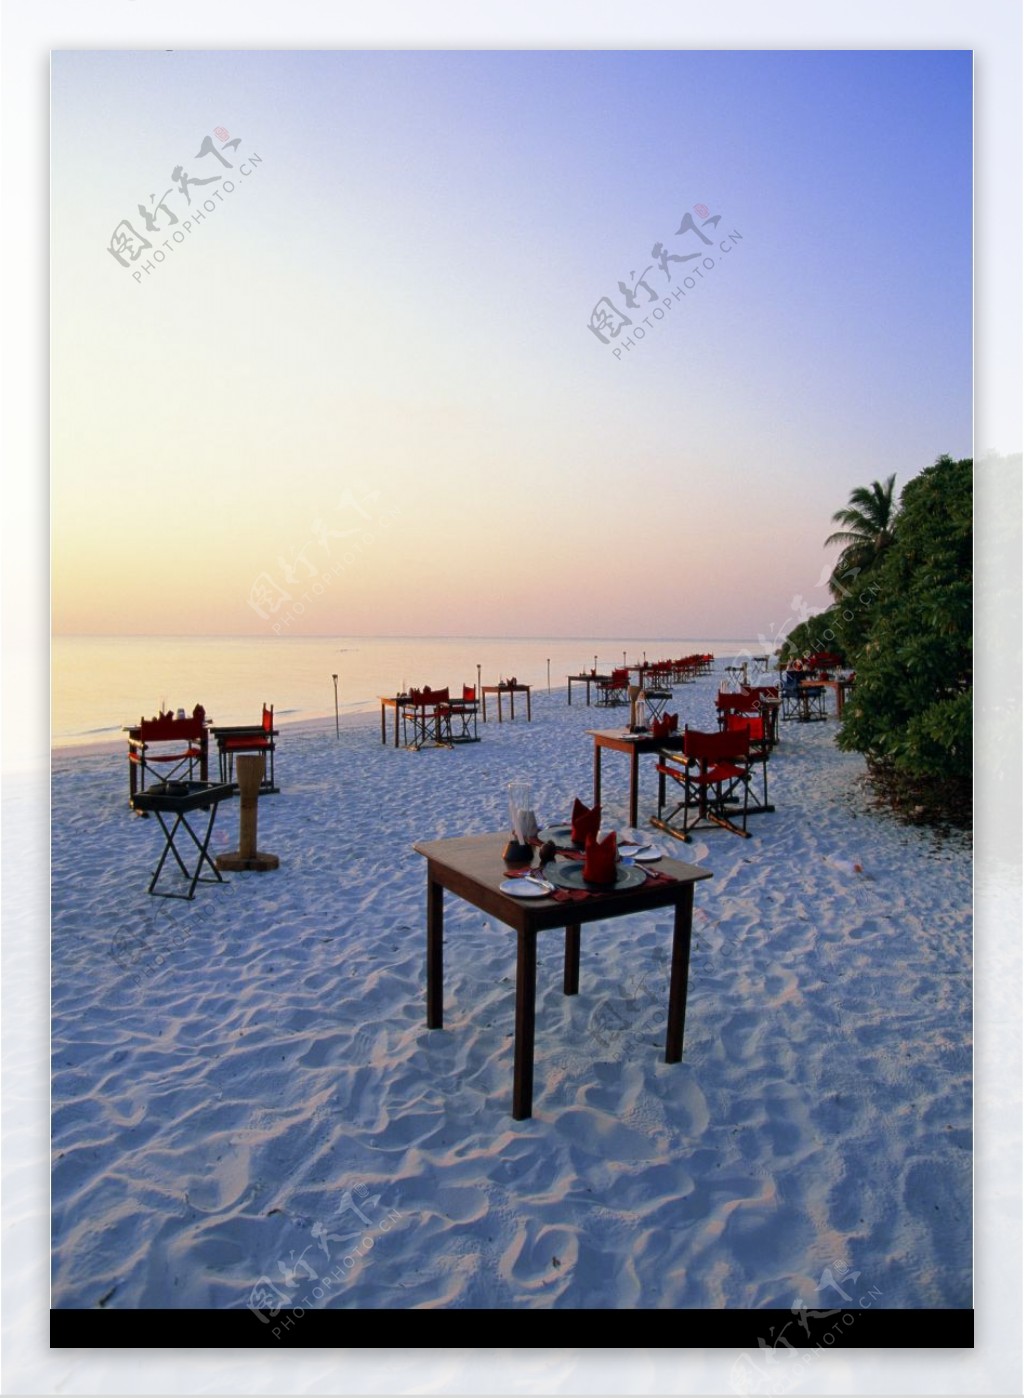 沙滩餐厅图片